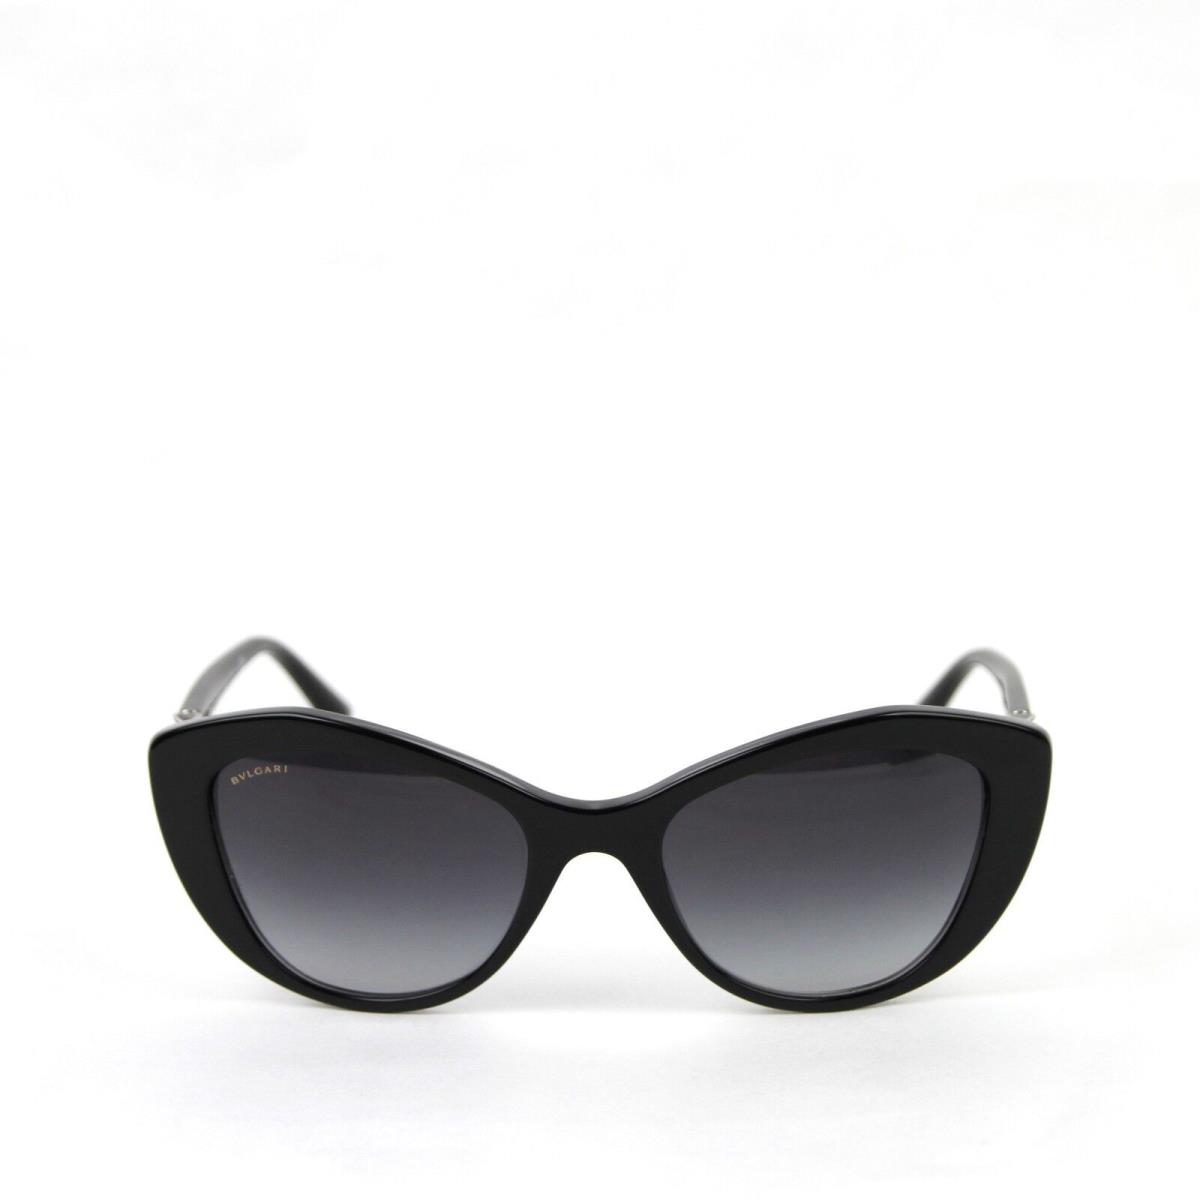 Bvlgari sunglasses  - Black Frame, Gray Lens 1